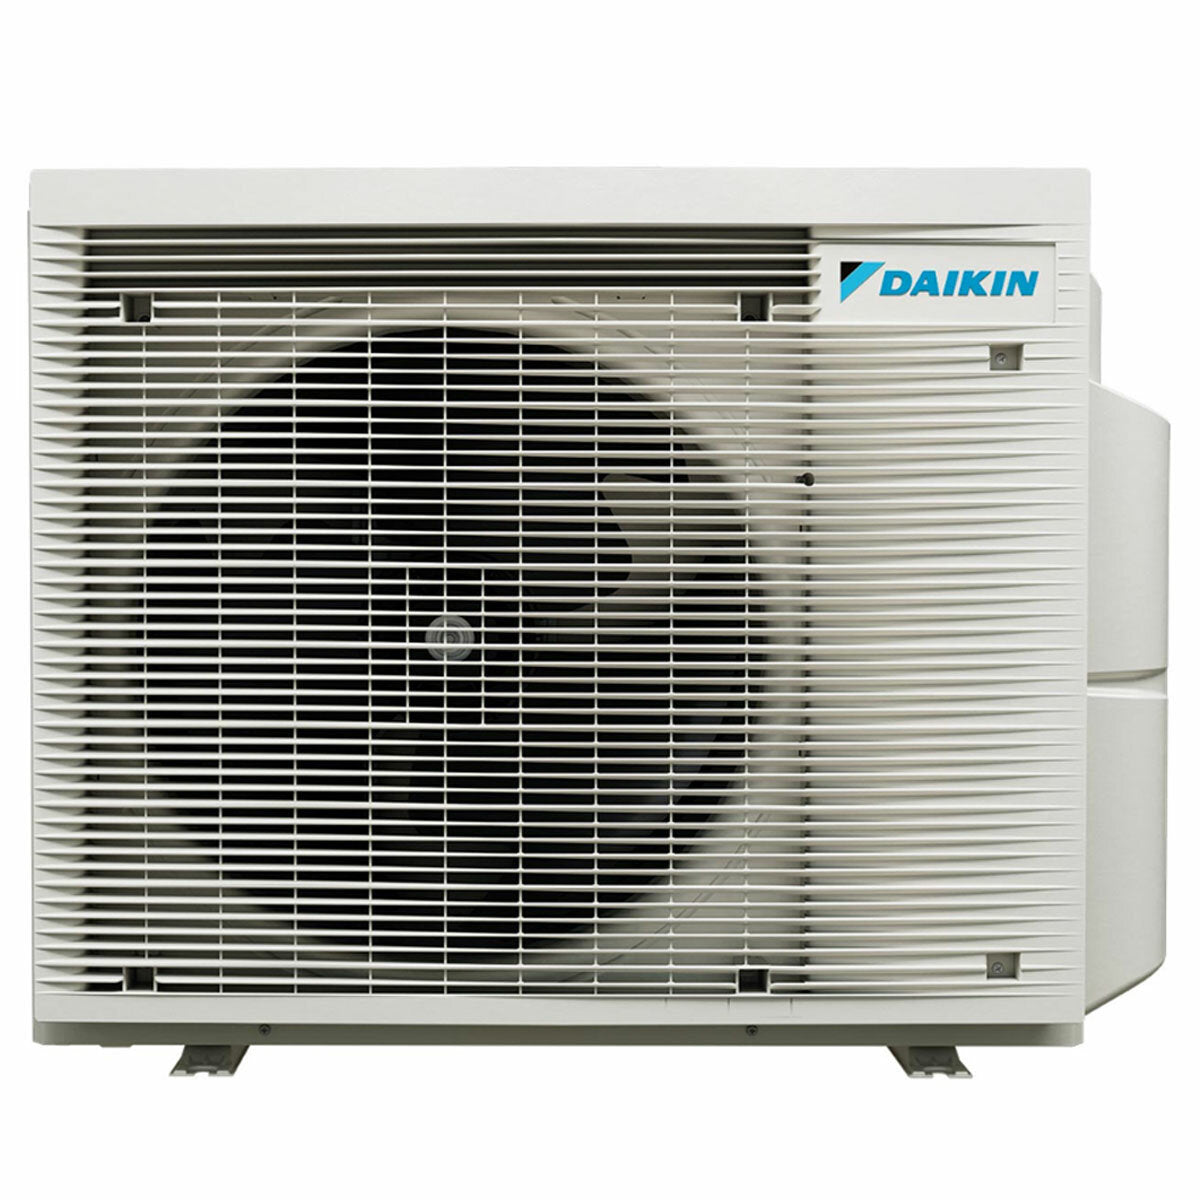 Daikin Emura 3 trial split air conditioner 9000+12000+12000 BTU inverter A+ wifi outdoor unit 6.8 kW White